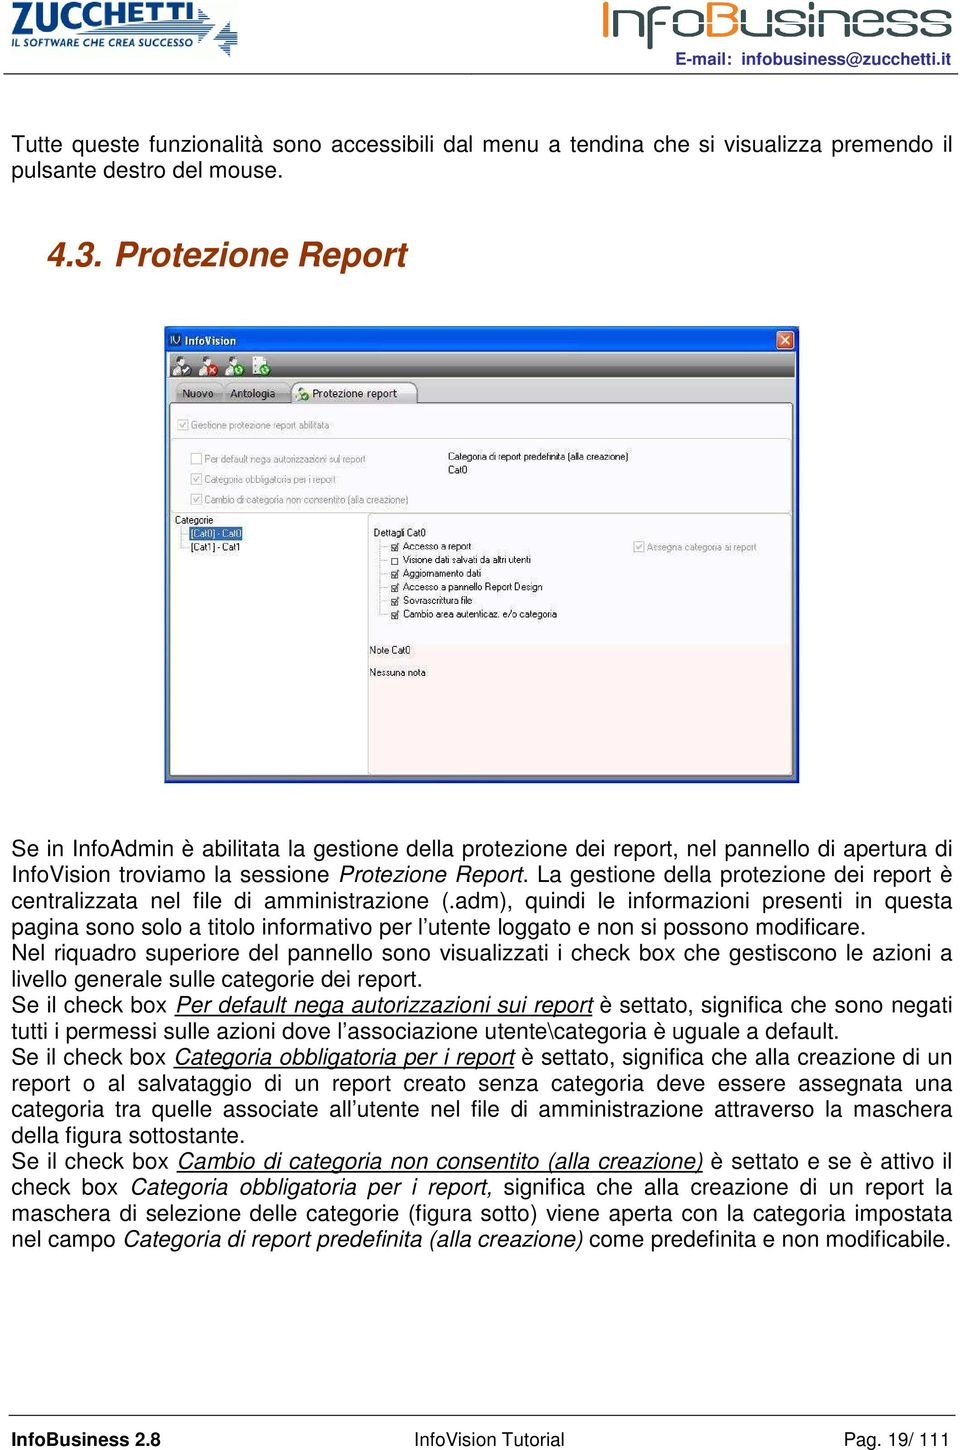 La gestione della protezione dei report è centralizzata nel file di amministrazione (.